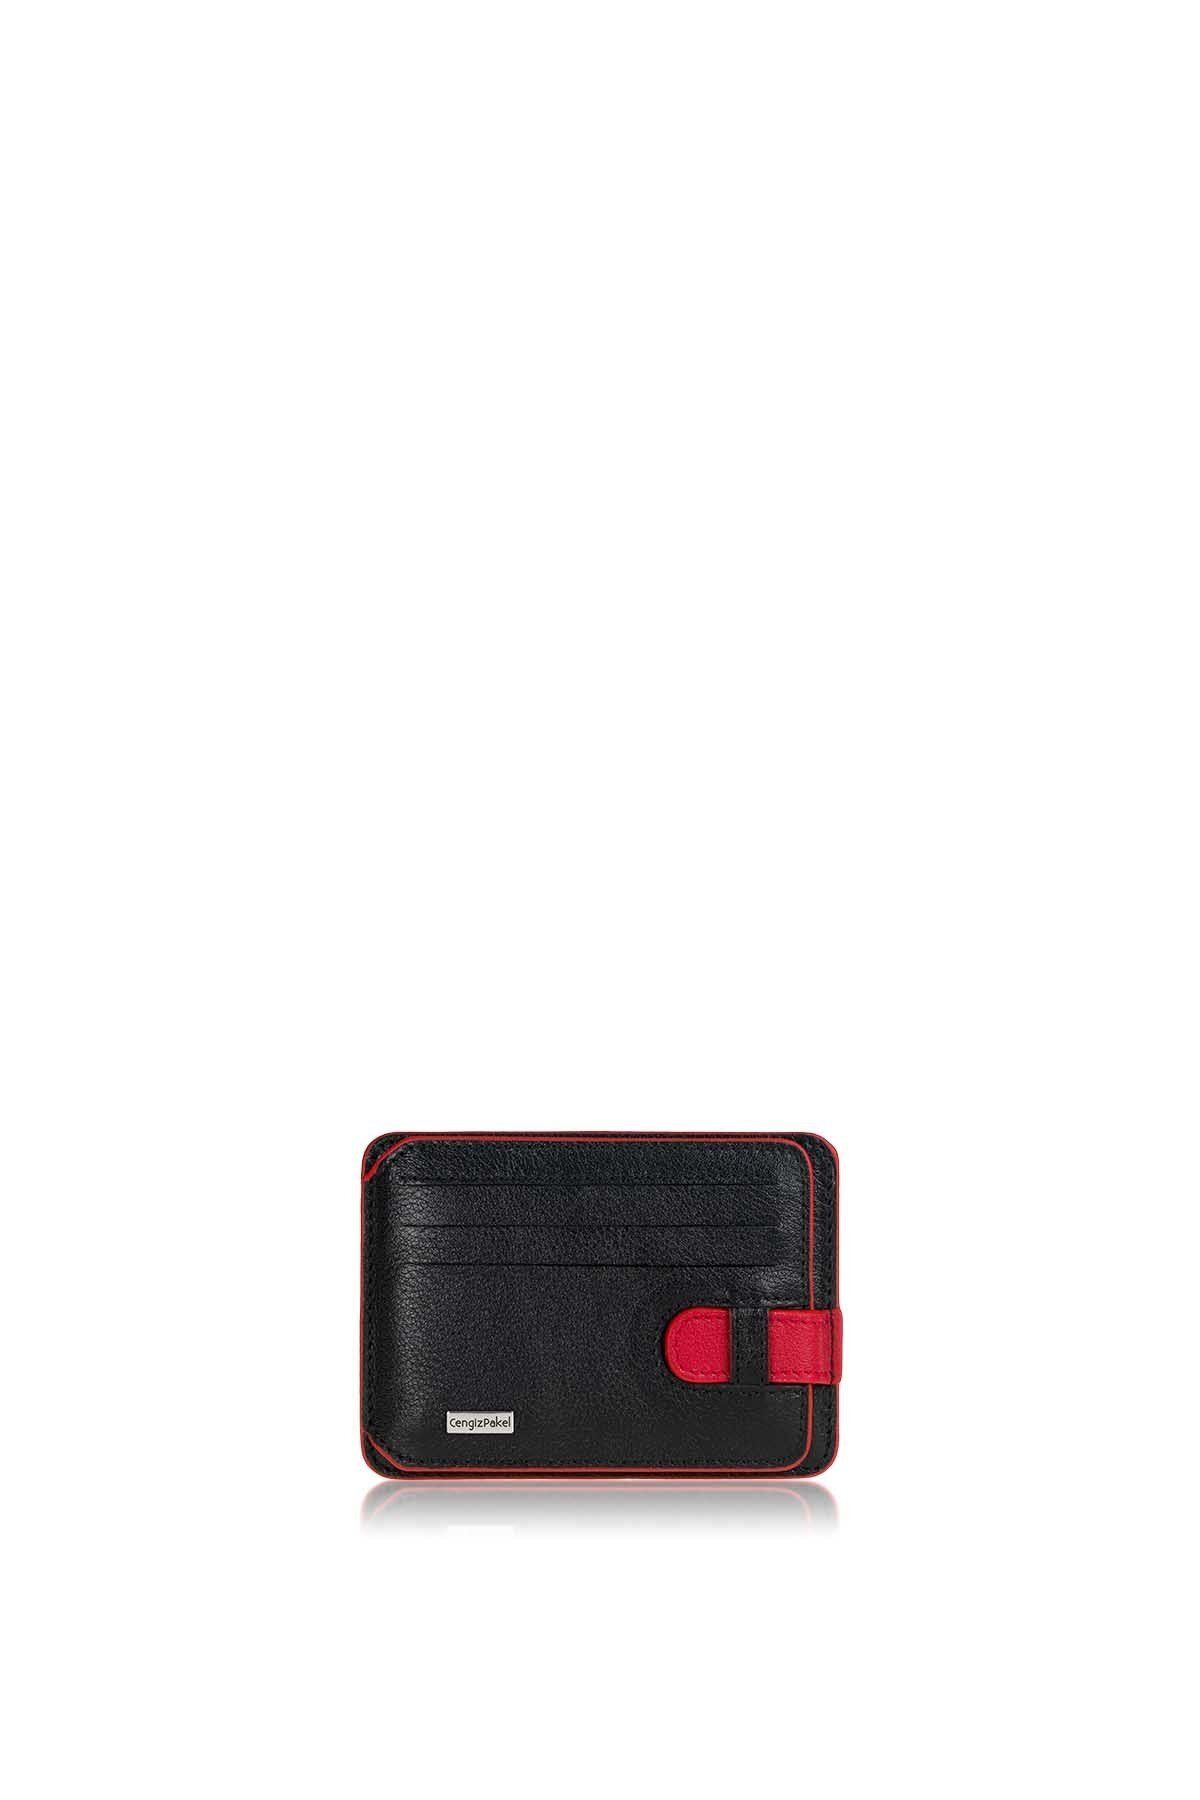 Cengiz Pakel Cengiz Pakel Hakiki Deri Kartlık 2404-siyah-kırmızı